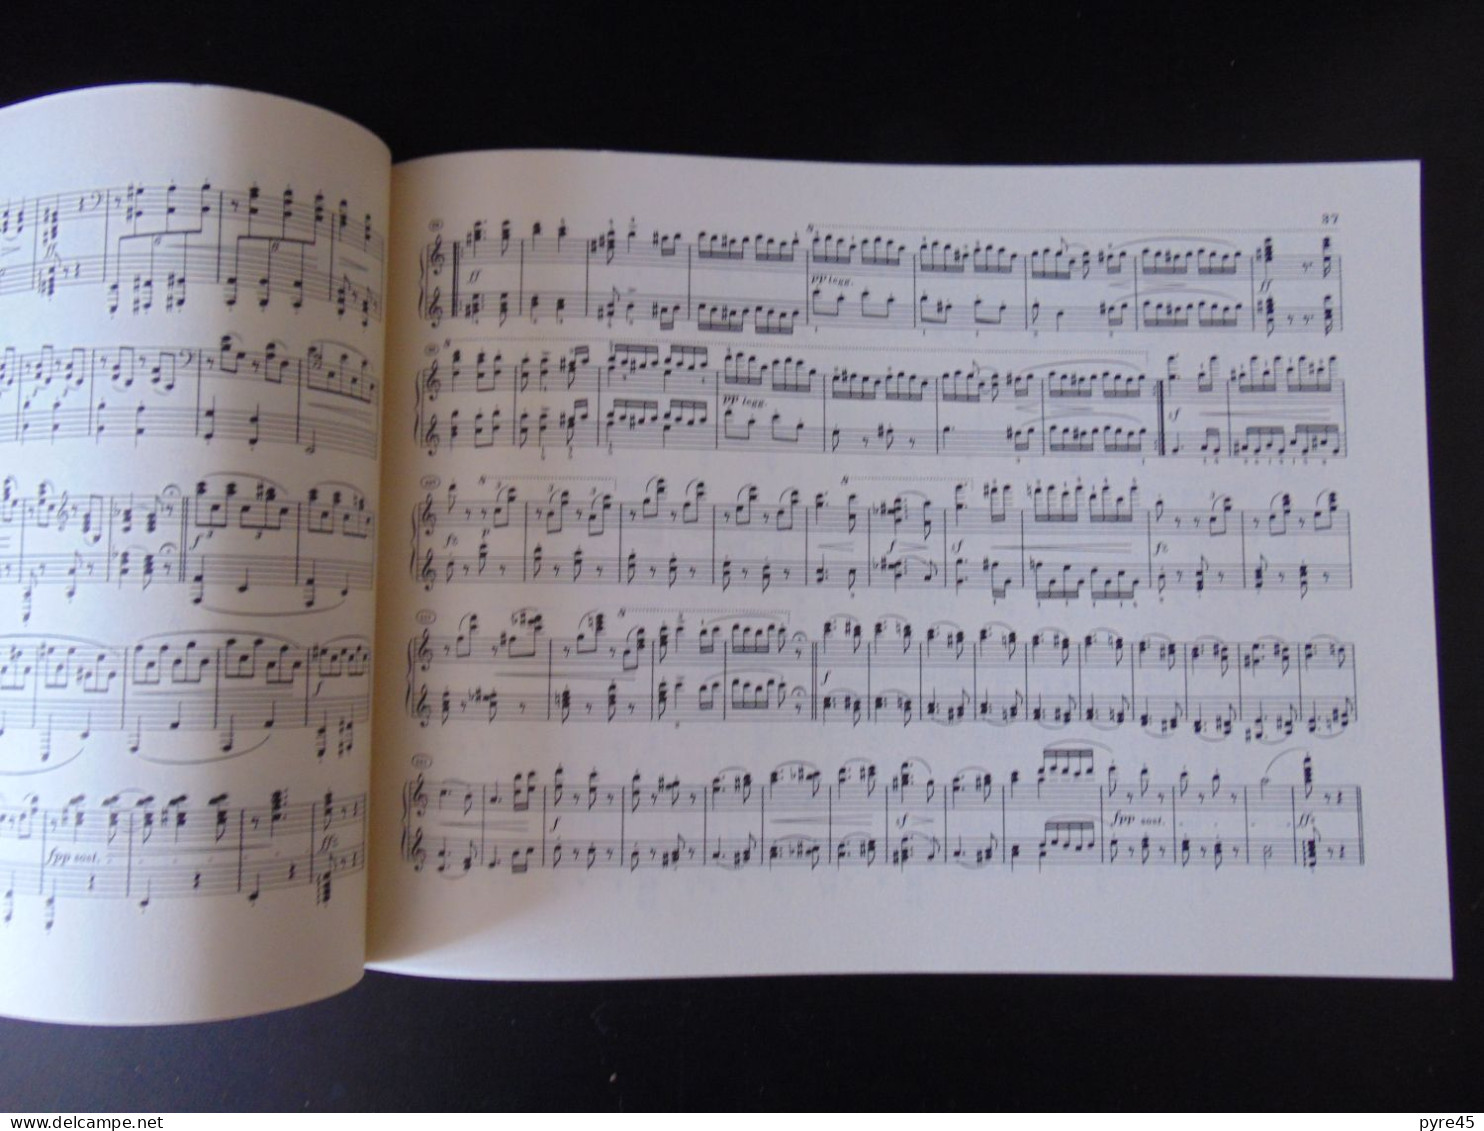 Partition " Brahms, Danses Hongroises " Piano à 4 Mains, 85 Pages, 1984 - Partitions Musicales Anciennes